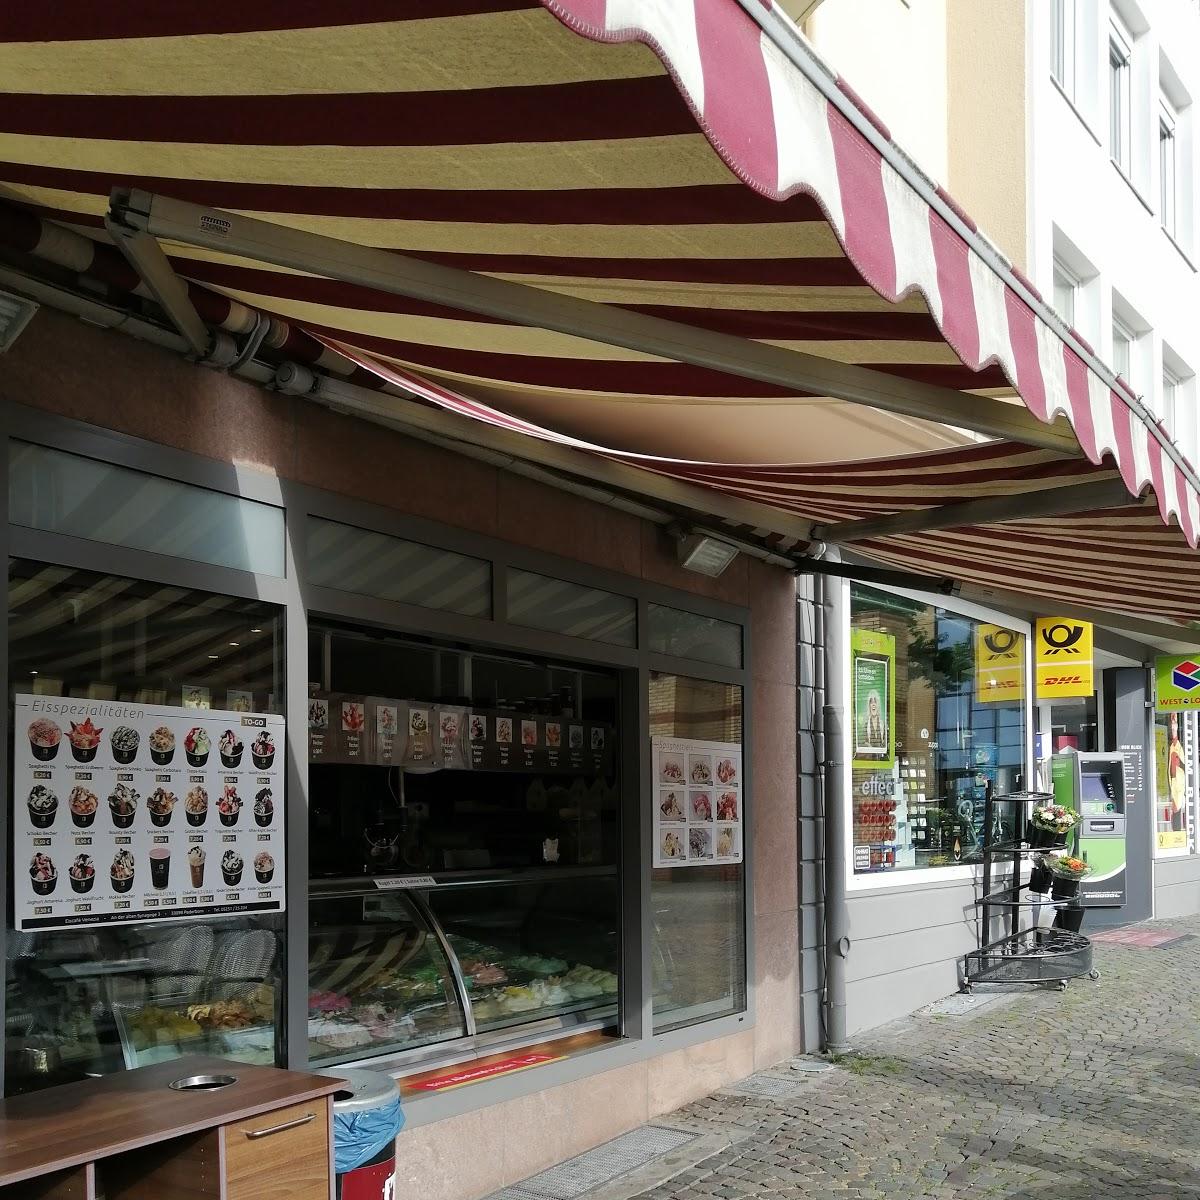 Restaurant "Eiscafé Venezia" in Paderborn